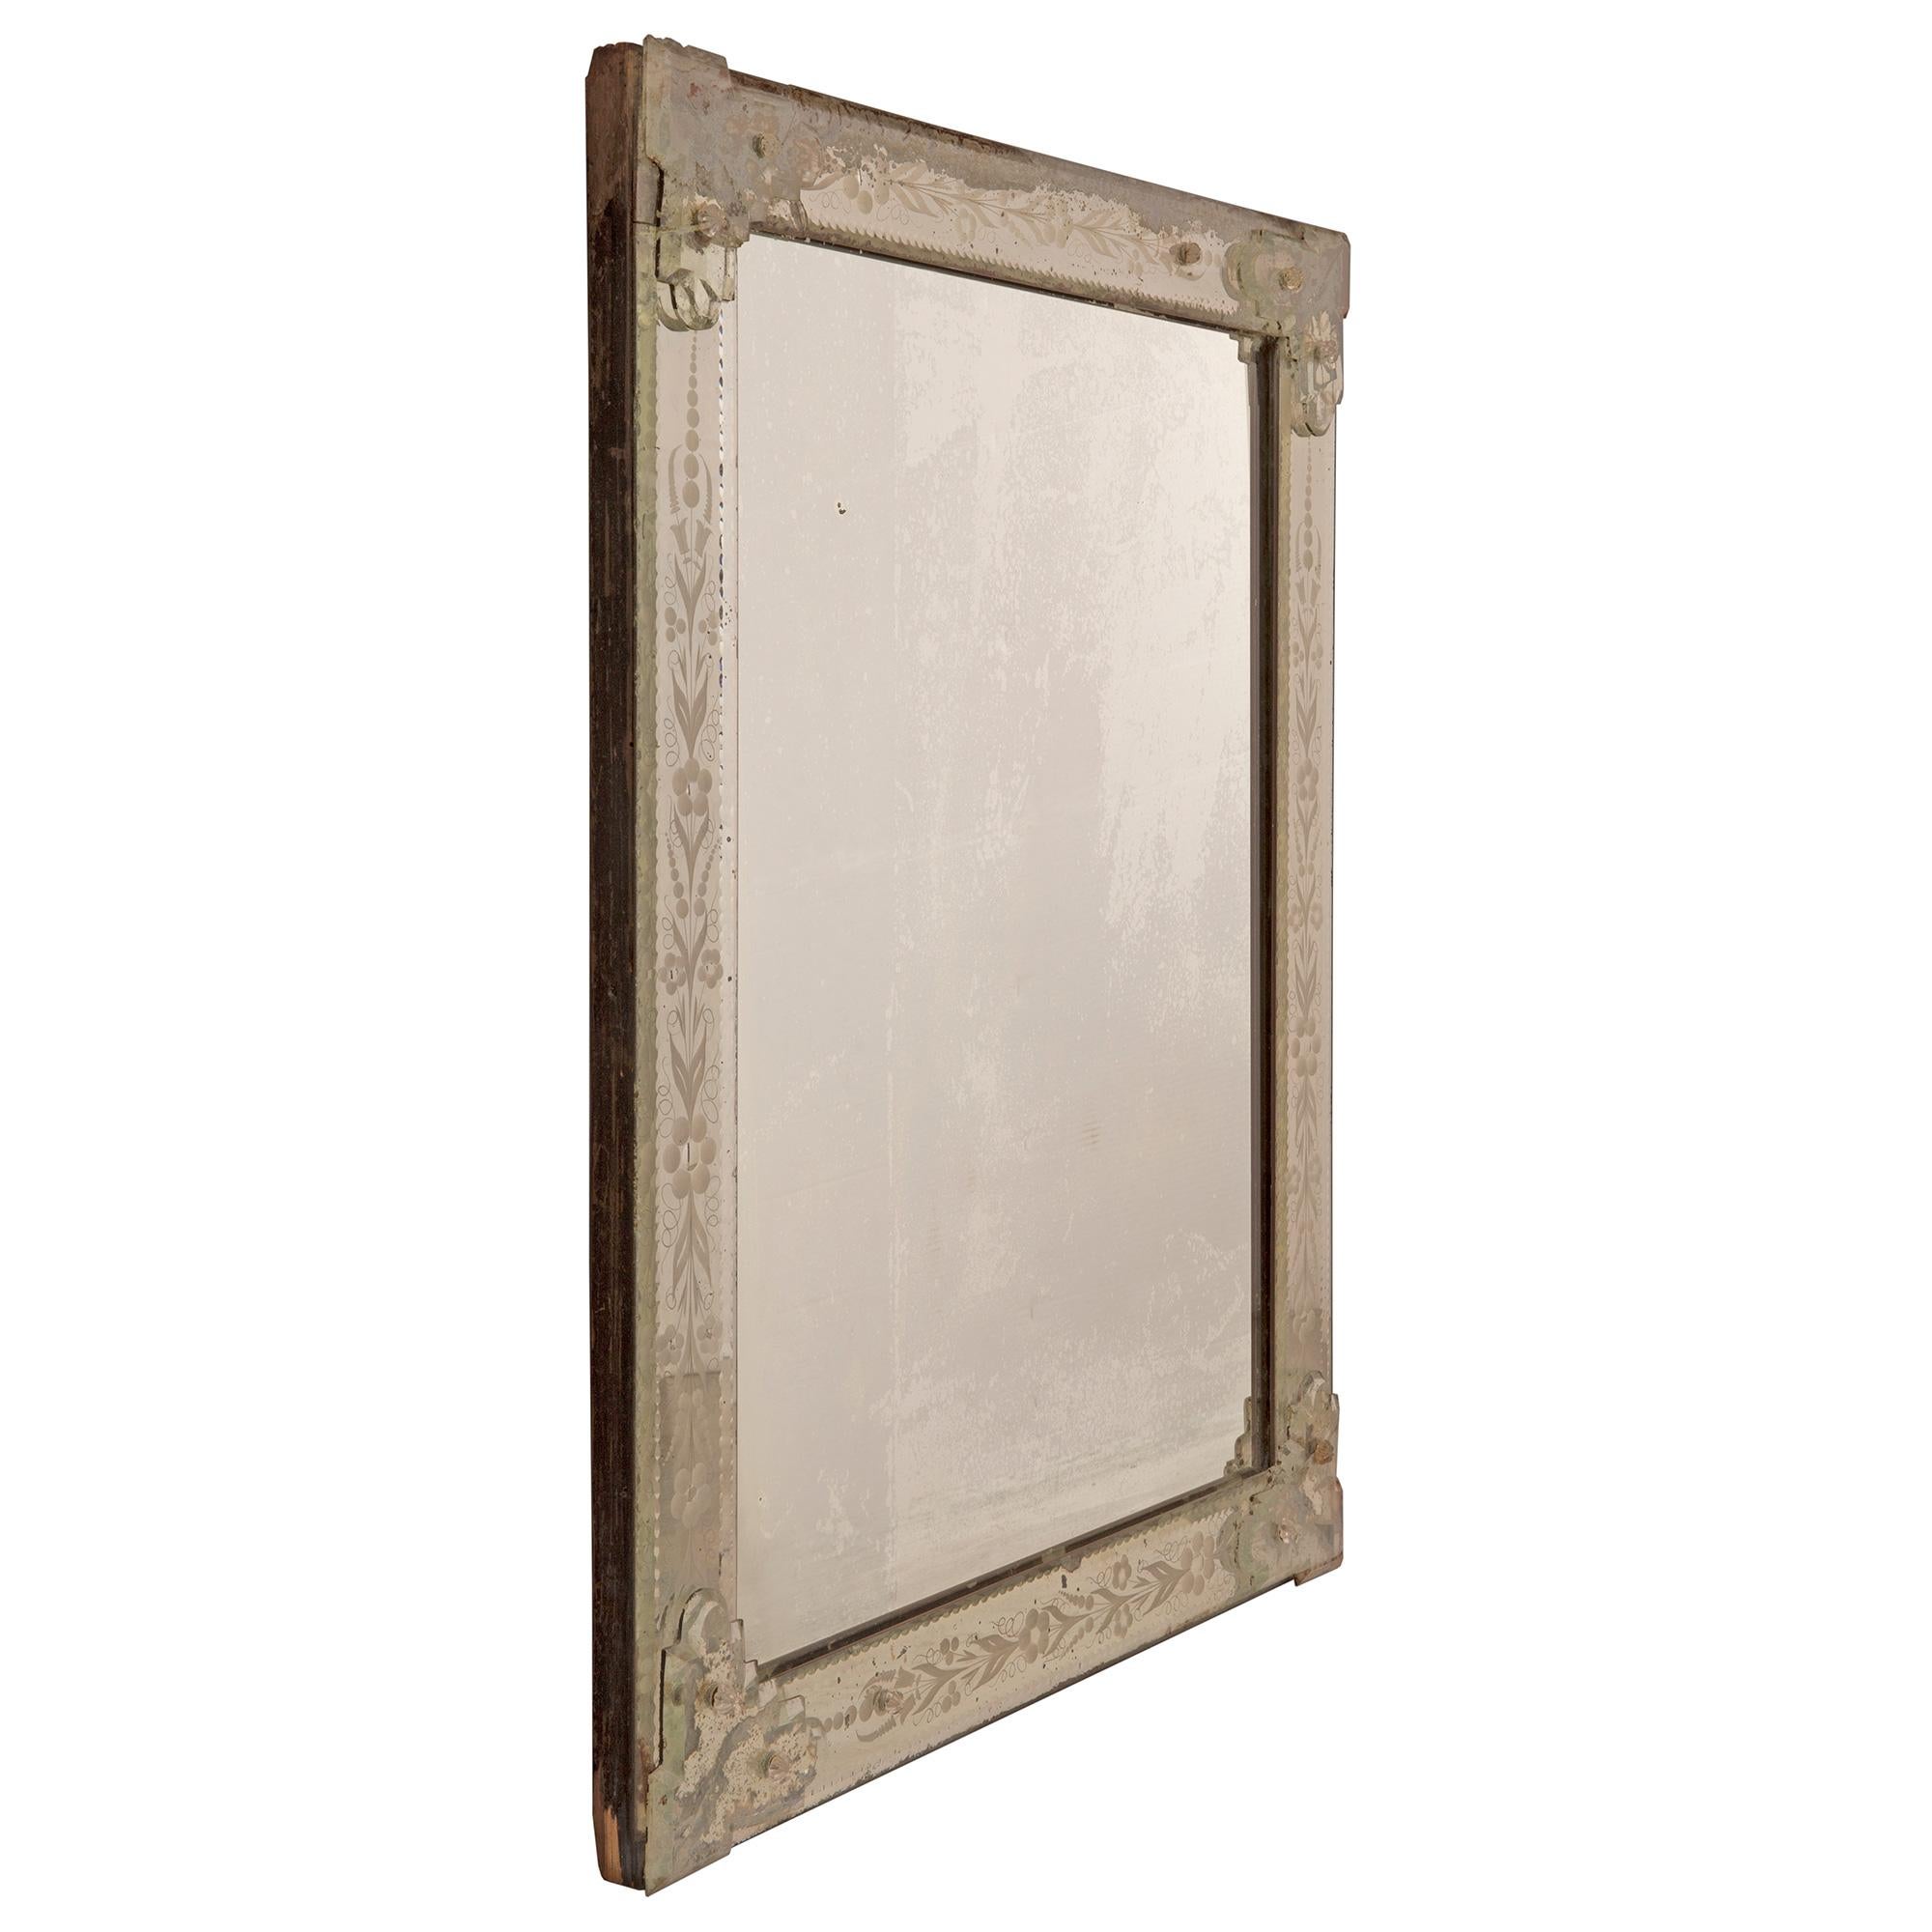 Un très joli miroir italien du 19ème siècle en st. vénitien gravé. La plaque de miroir d'origine est encadrée par d'autres plaques de miroir gravées d'origine, élégantes et finement détaillées. Les plaques de miroir extérieures présentent de